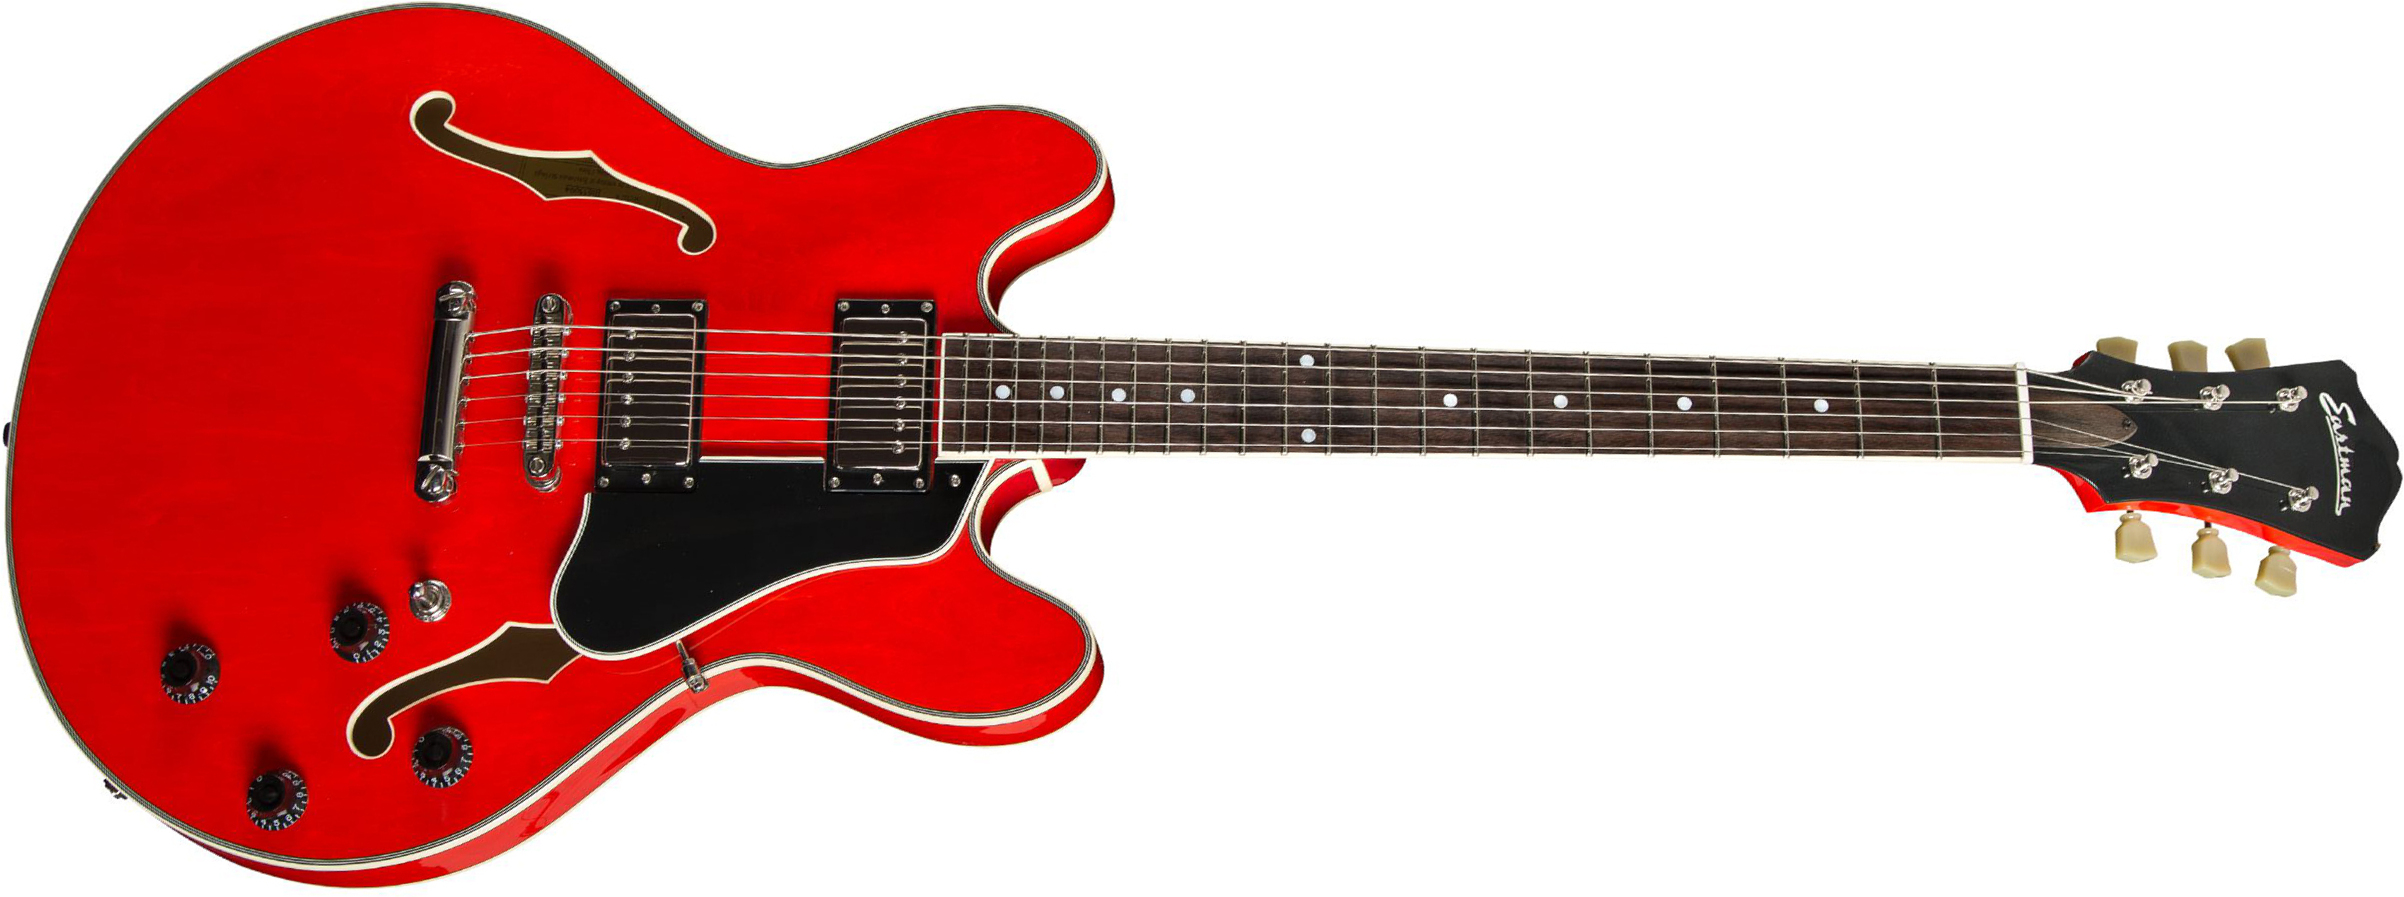 Eastman T386 Thinline Laminate Tout Erable Ht Eb - Red - Guitarra eléctrica semi caja - Main picture